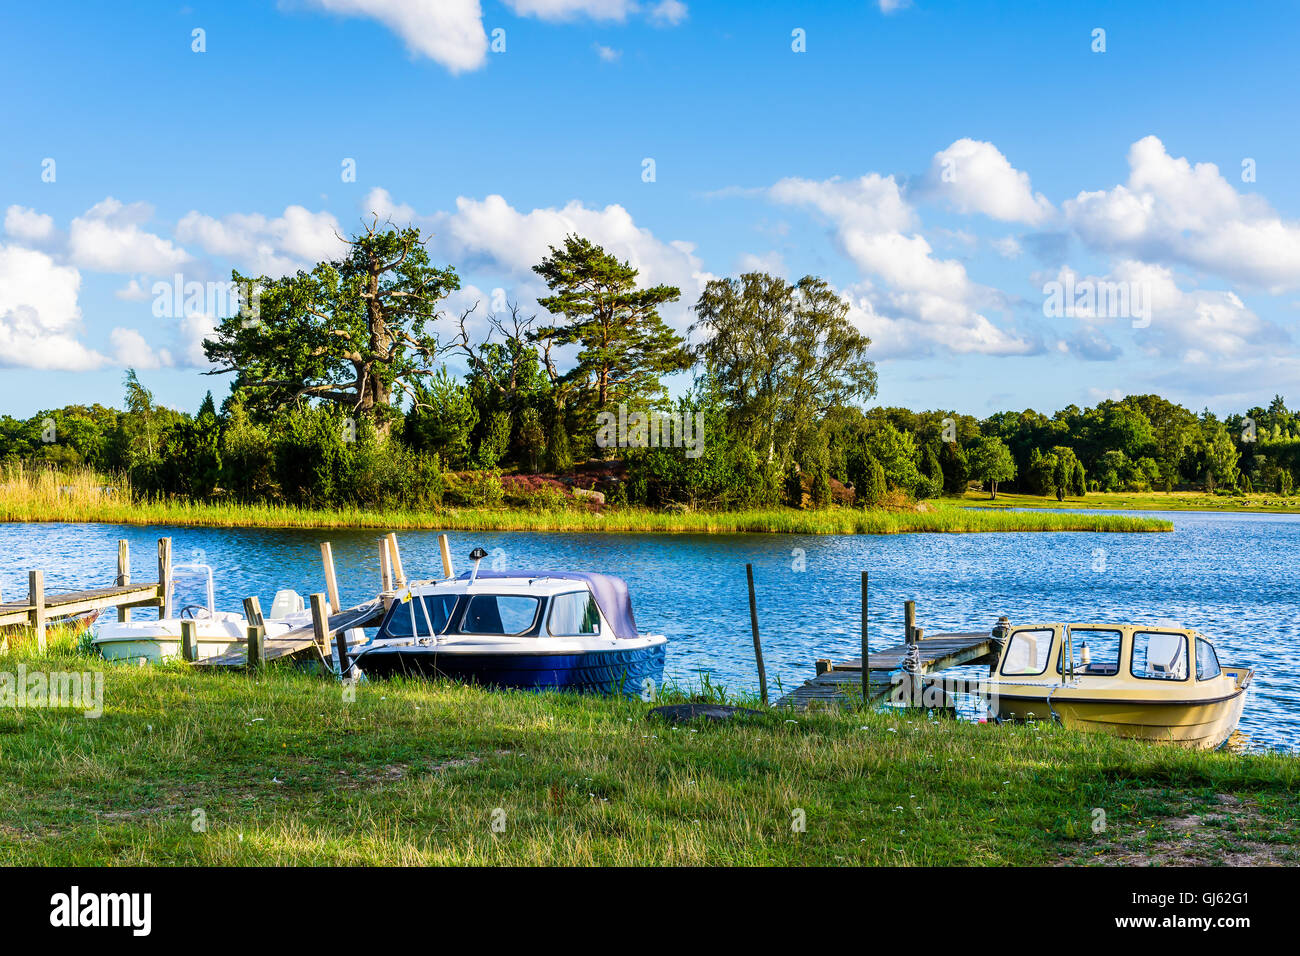 Pataholm, Suecia - 9 de agosto de 2016: tres botes de placer amarrados a muelles improvisados en un bello entorno natural en los archi Foto de stock